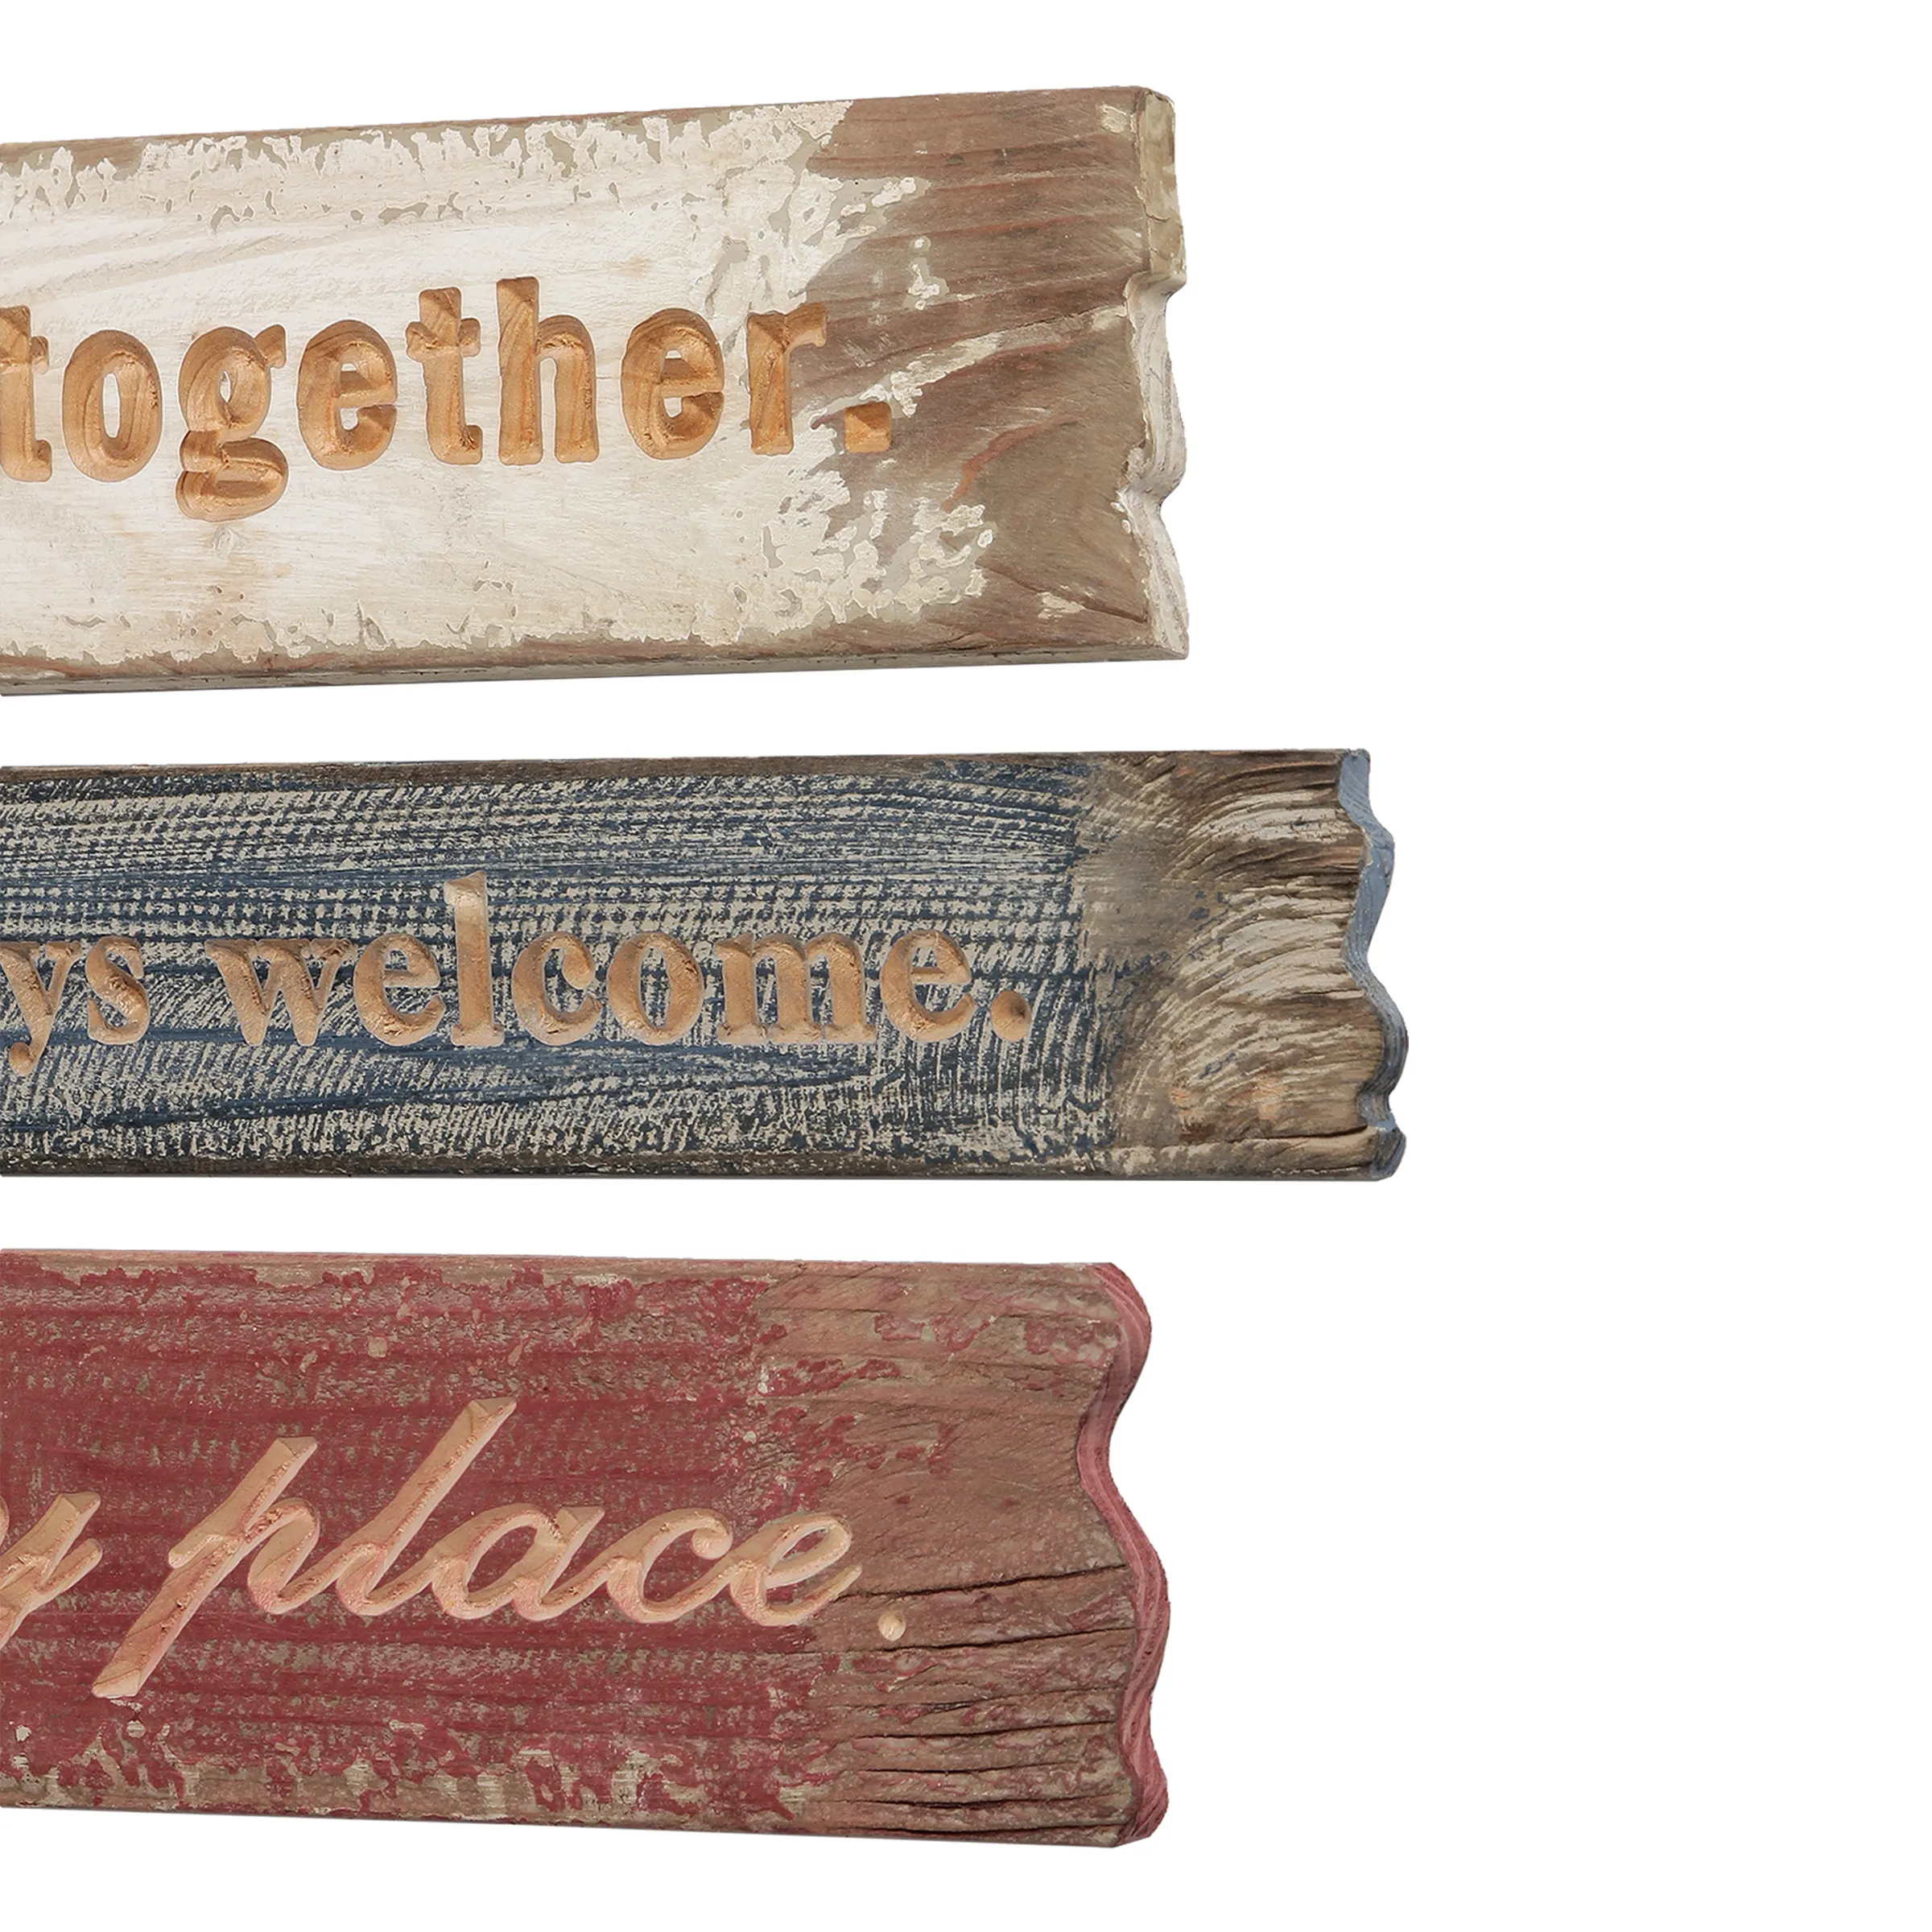 Juegos de letreros artesanales de madera personalizados, para el hogar Decoración rústica, letras colgantes de pared desgastadas